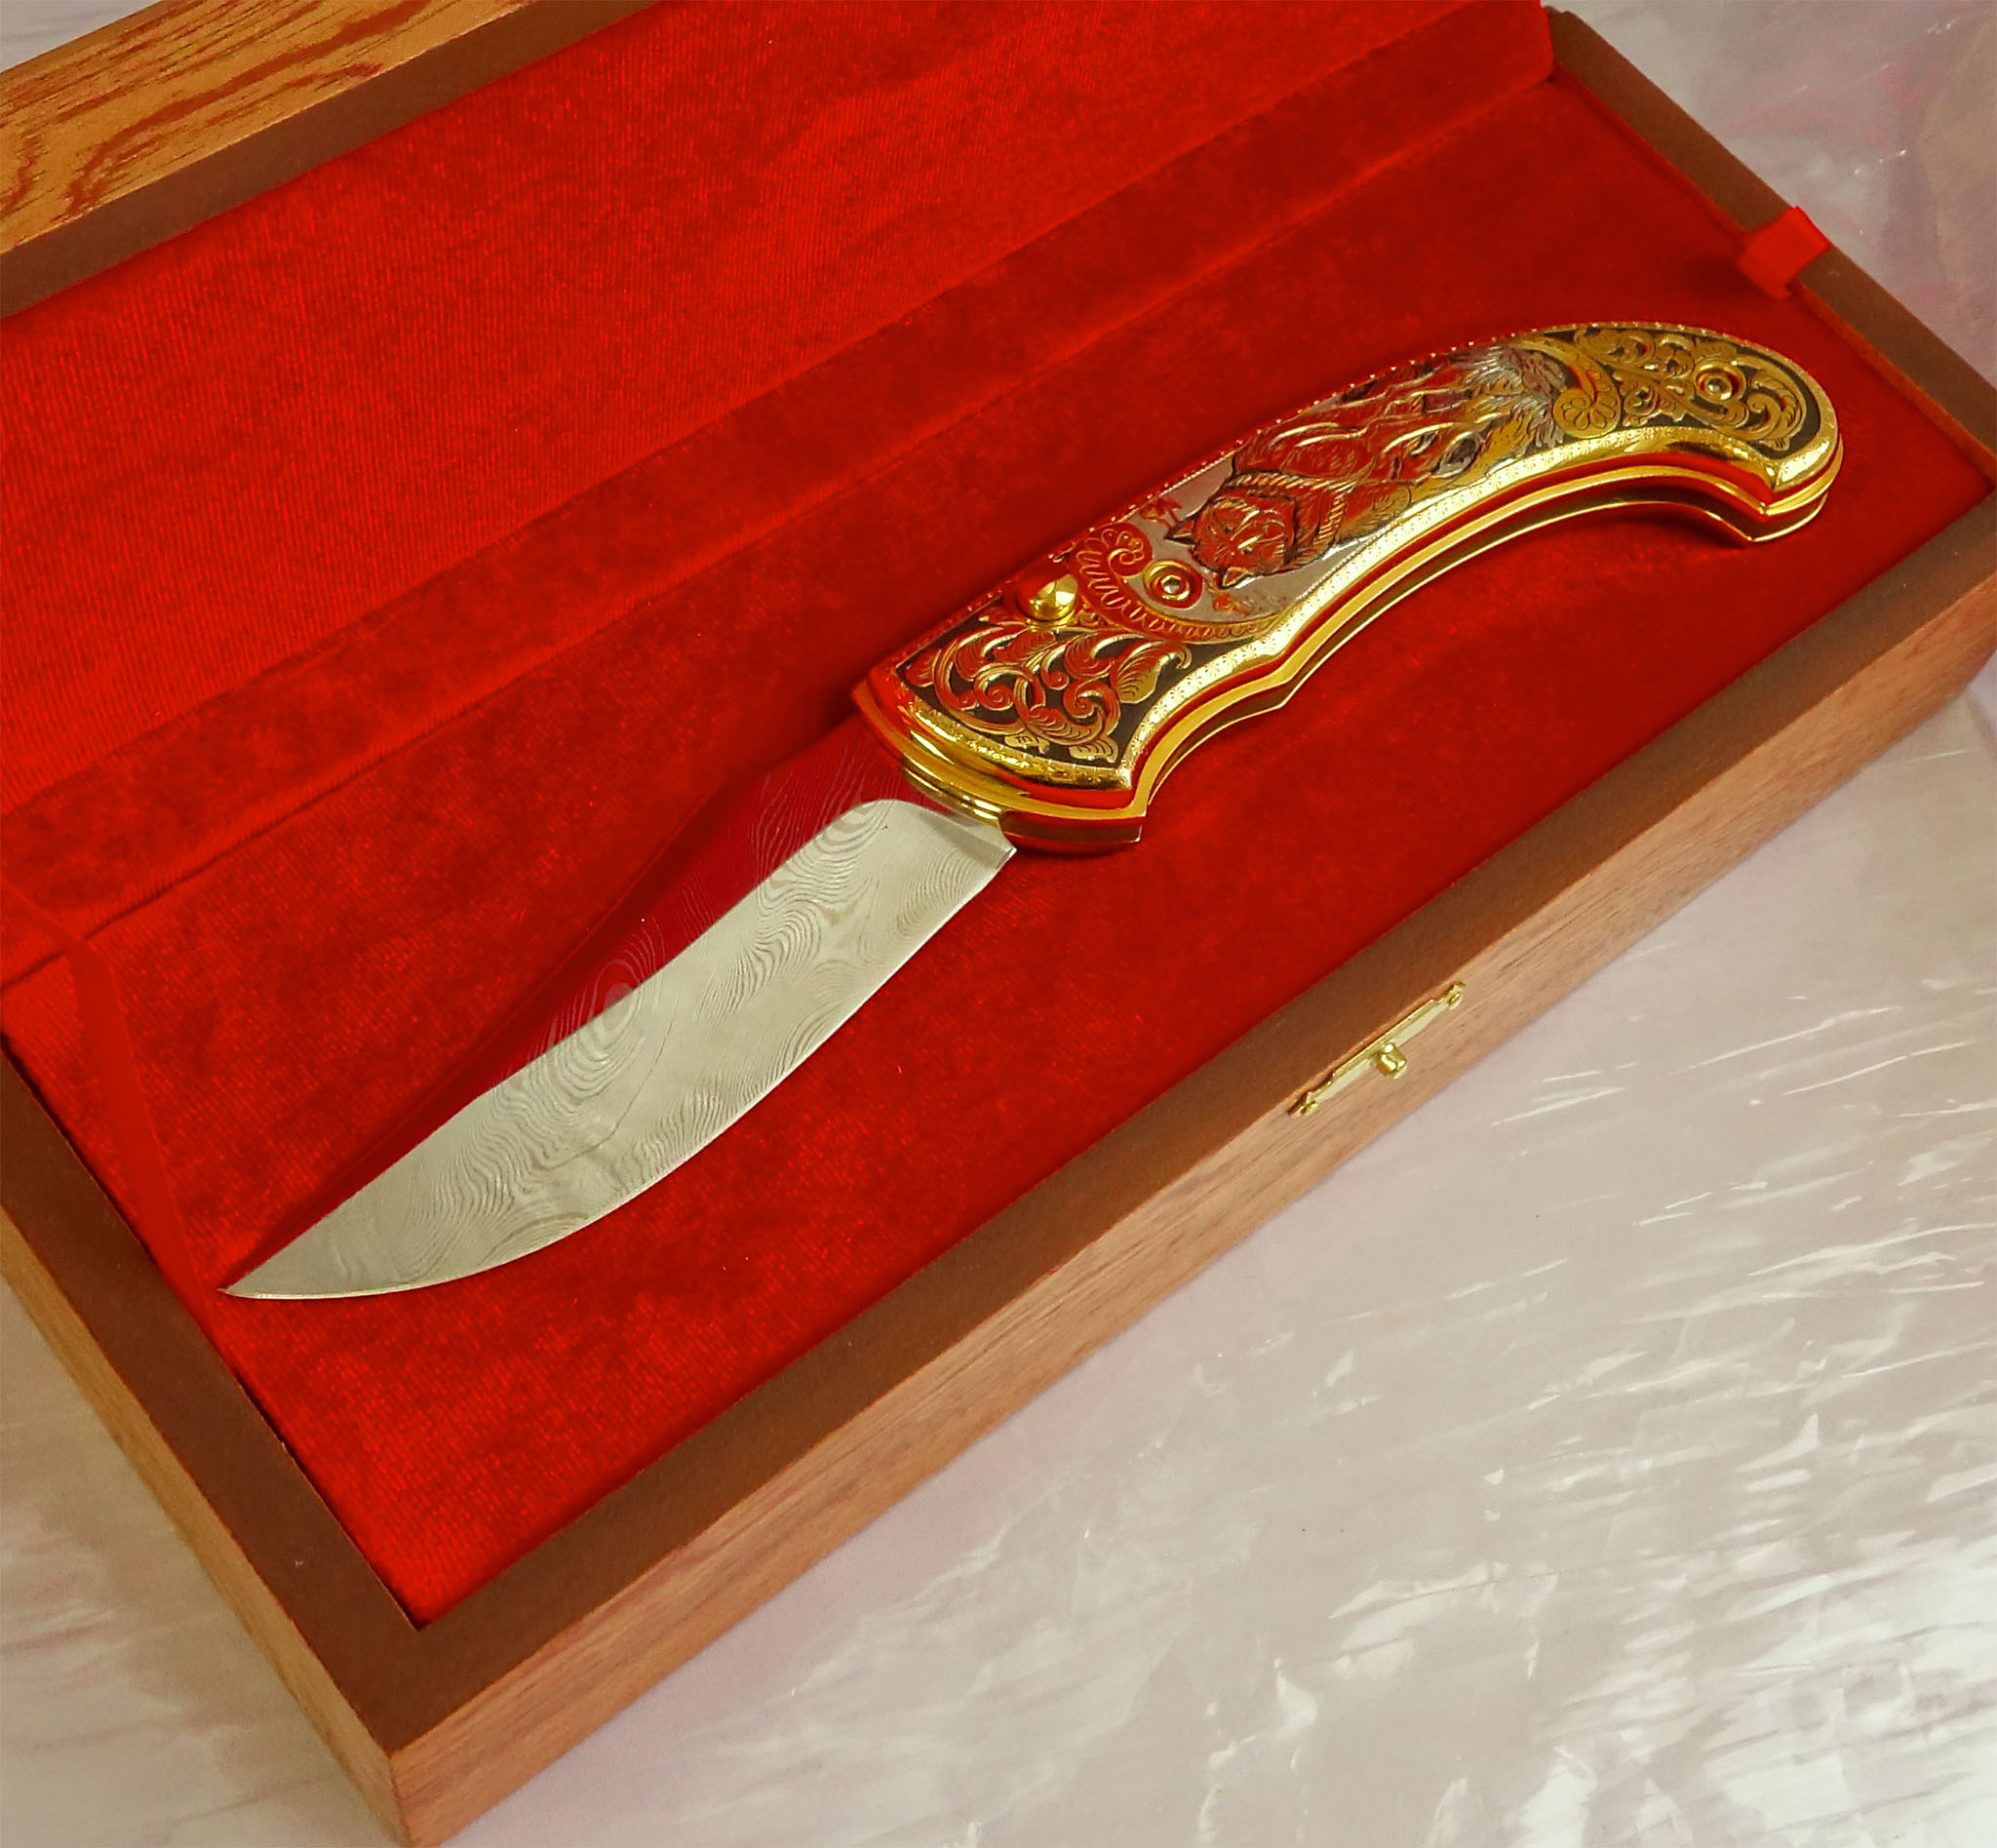 складные ножи златоуст каталог